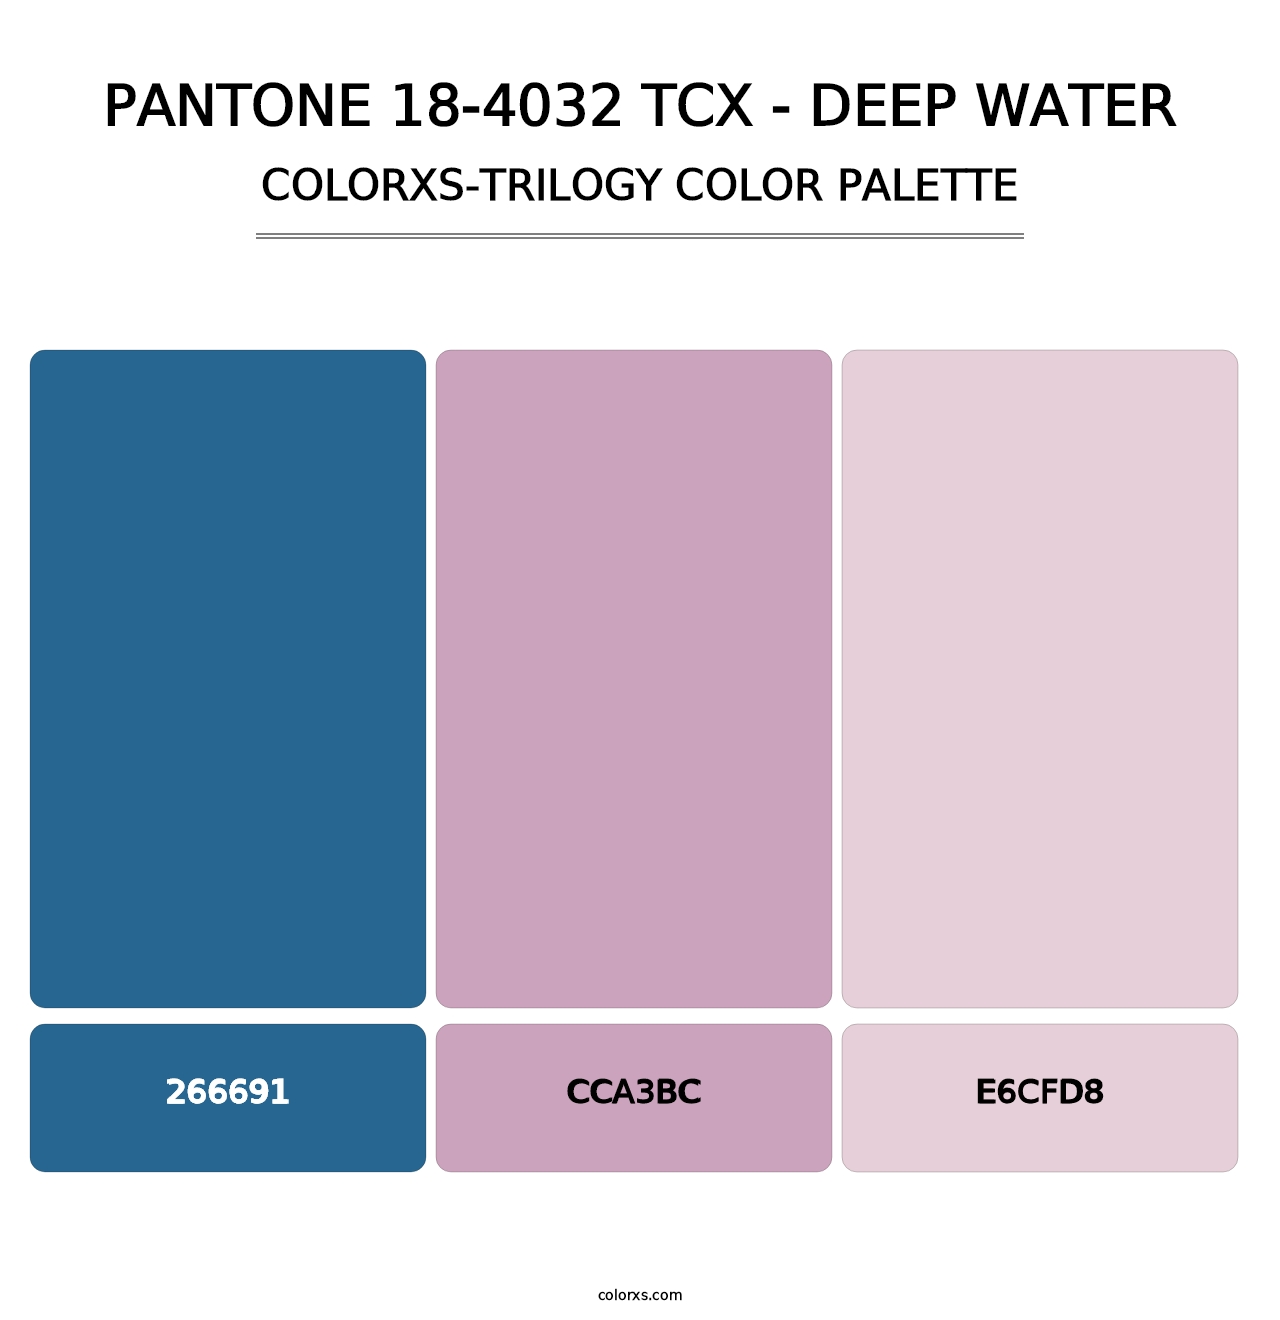 PANTONE 18-4032 TCX - Deep Water - Colorxs Trilogy Palette